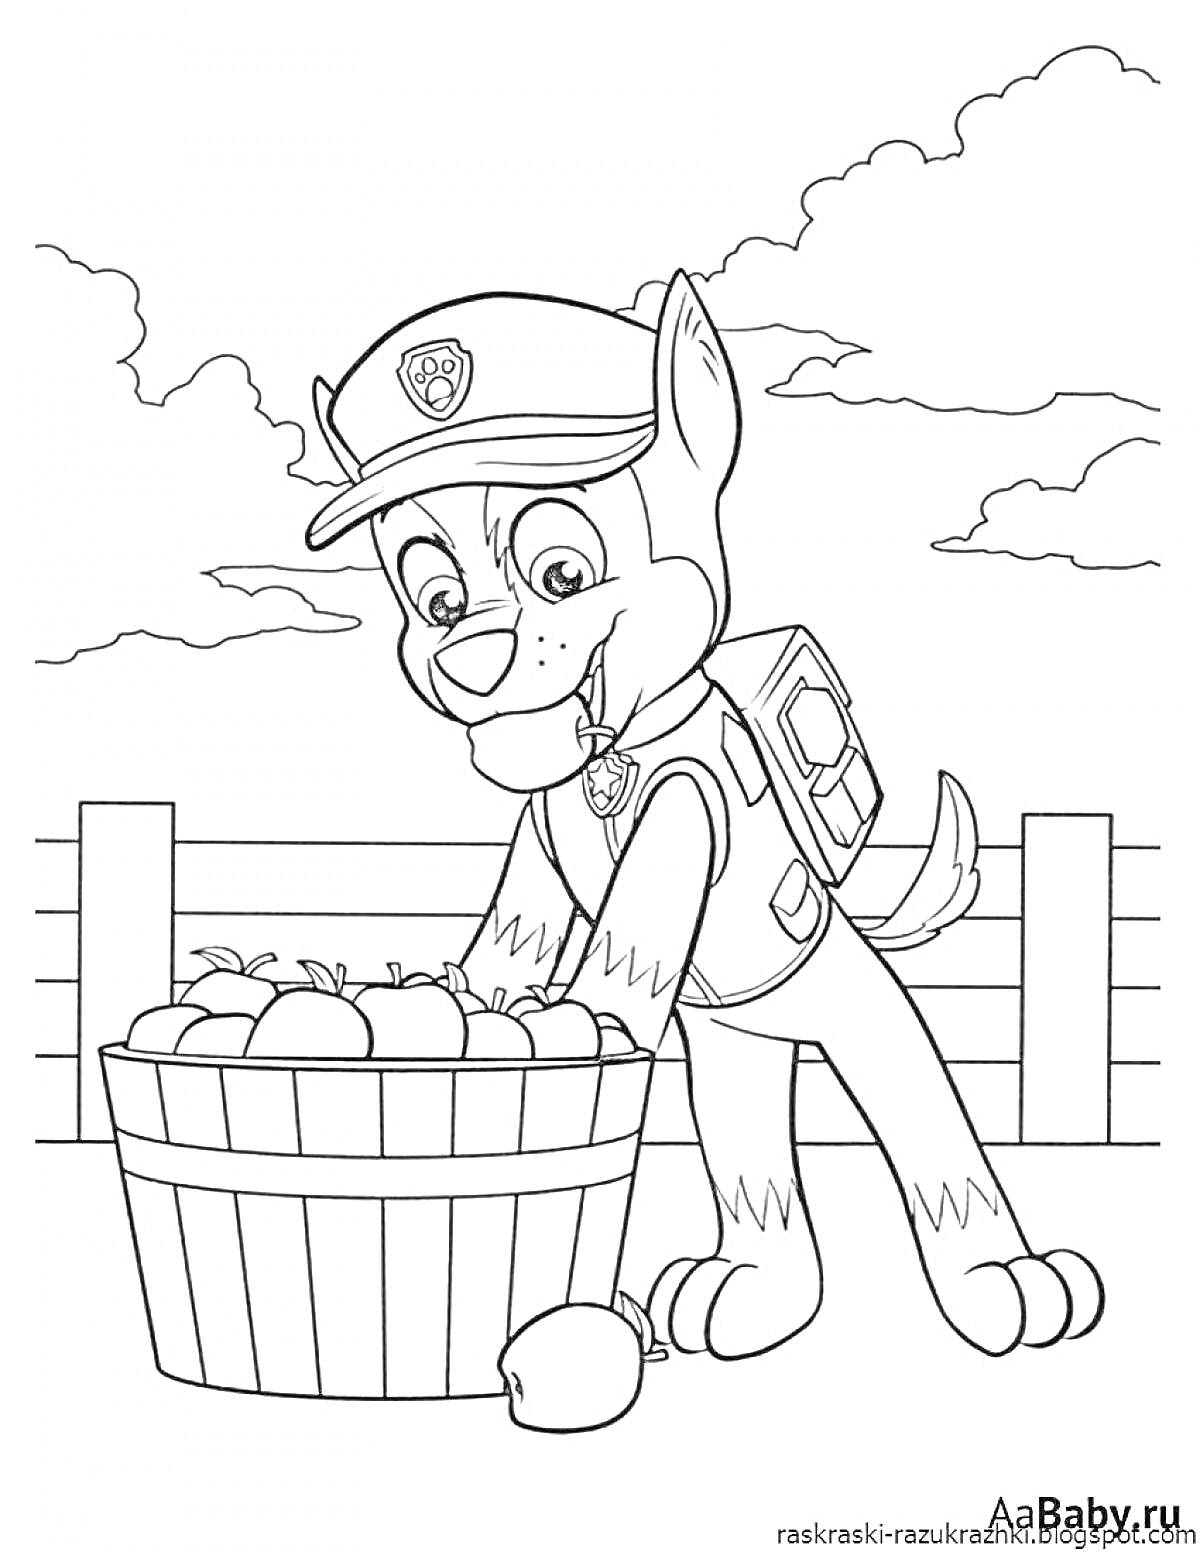 Раскраска Щенячий патруль Гонщик собирает яблоки у корзины на фоне забора и облаков